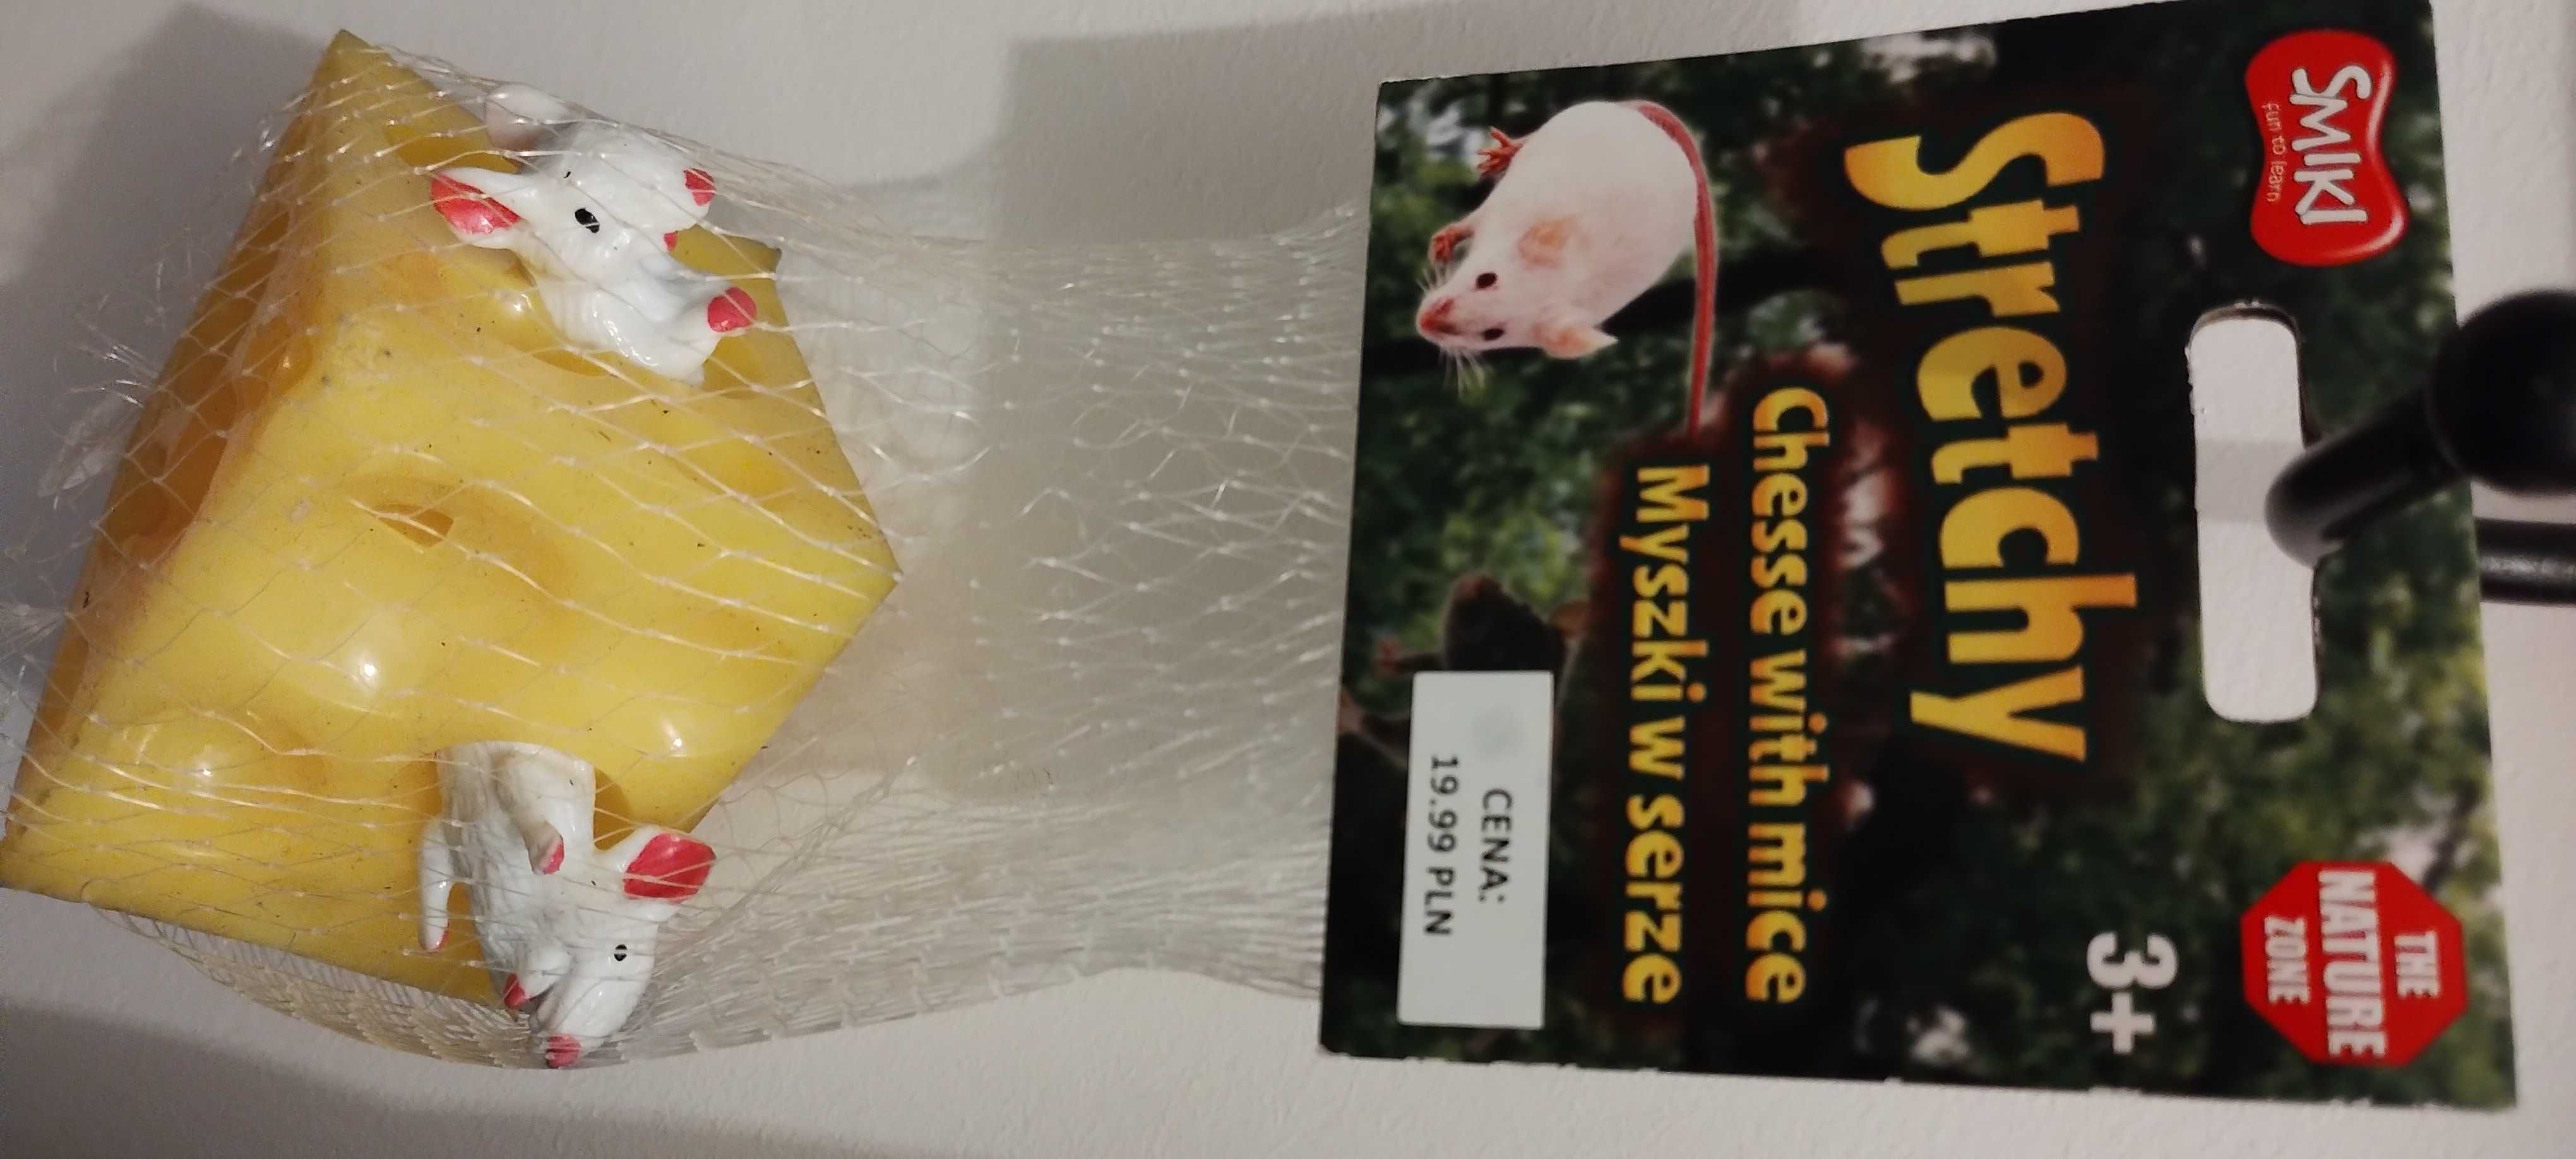 zabawka antystresowa gniotek ser i myszki Smiki